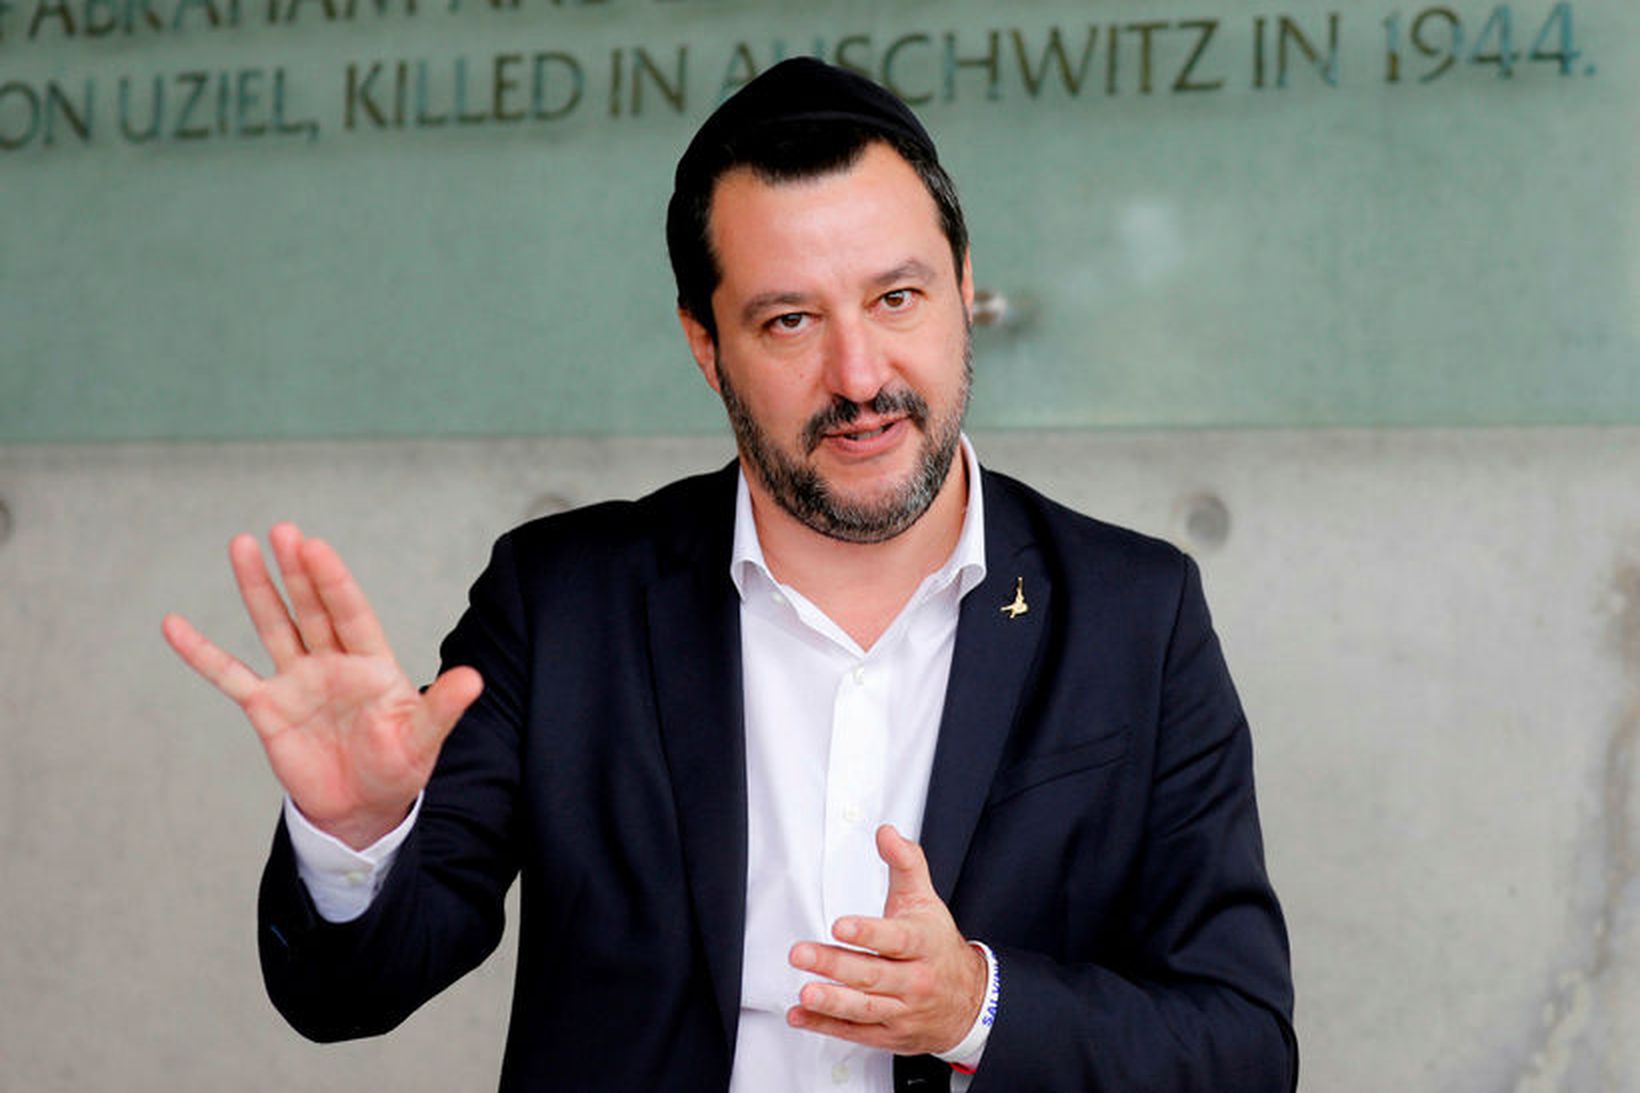 Matteo Salvini, varaforsætisráðherra og innanríkisráðherra Ítalíu.